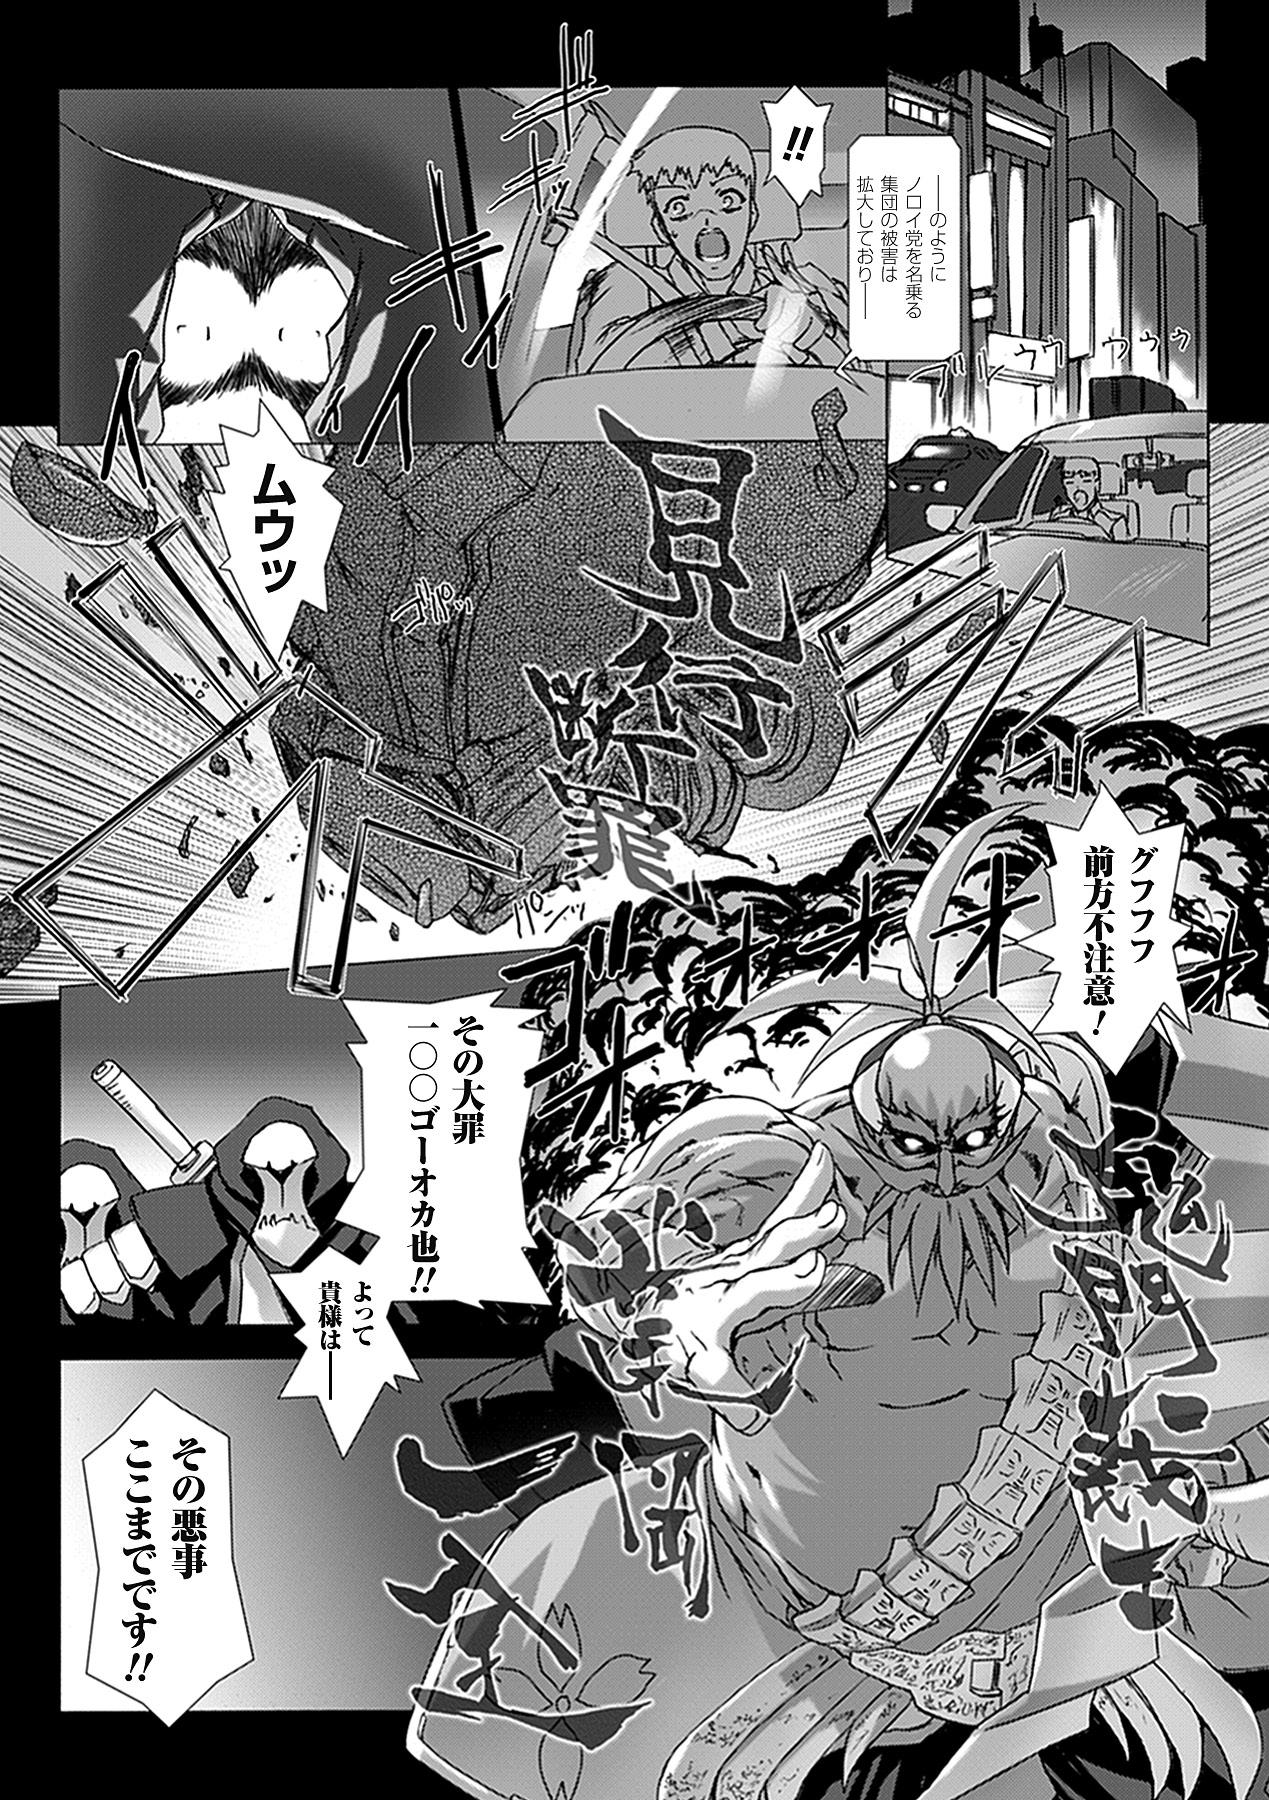 Cheat Choukou Sennin Haruka: Yaiba no Maki - Beat blades haruka Rope - Page 11